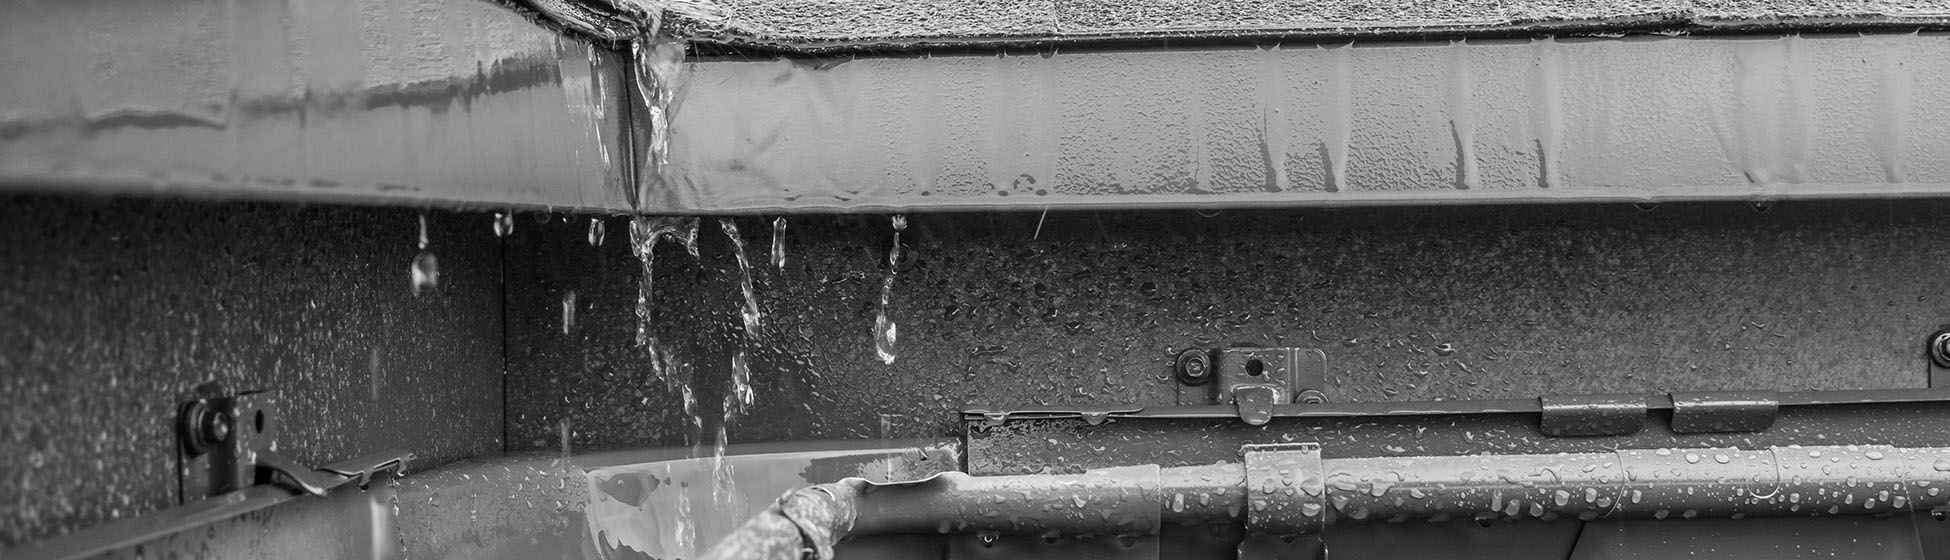 Installer un recuperateur d eau de pluie gouttiere rectangulaire